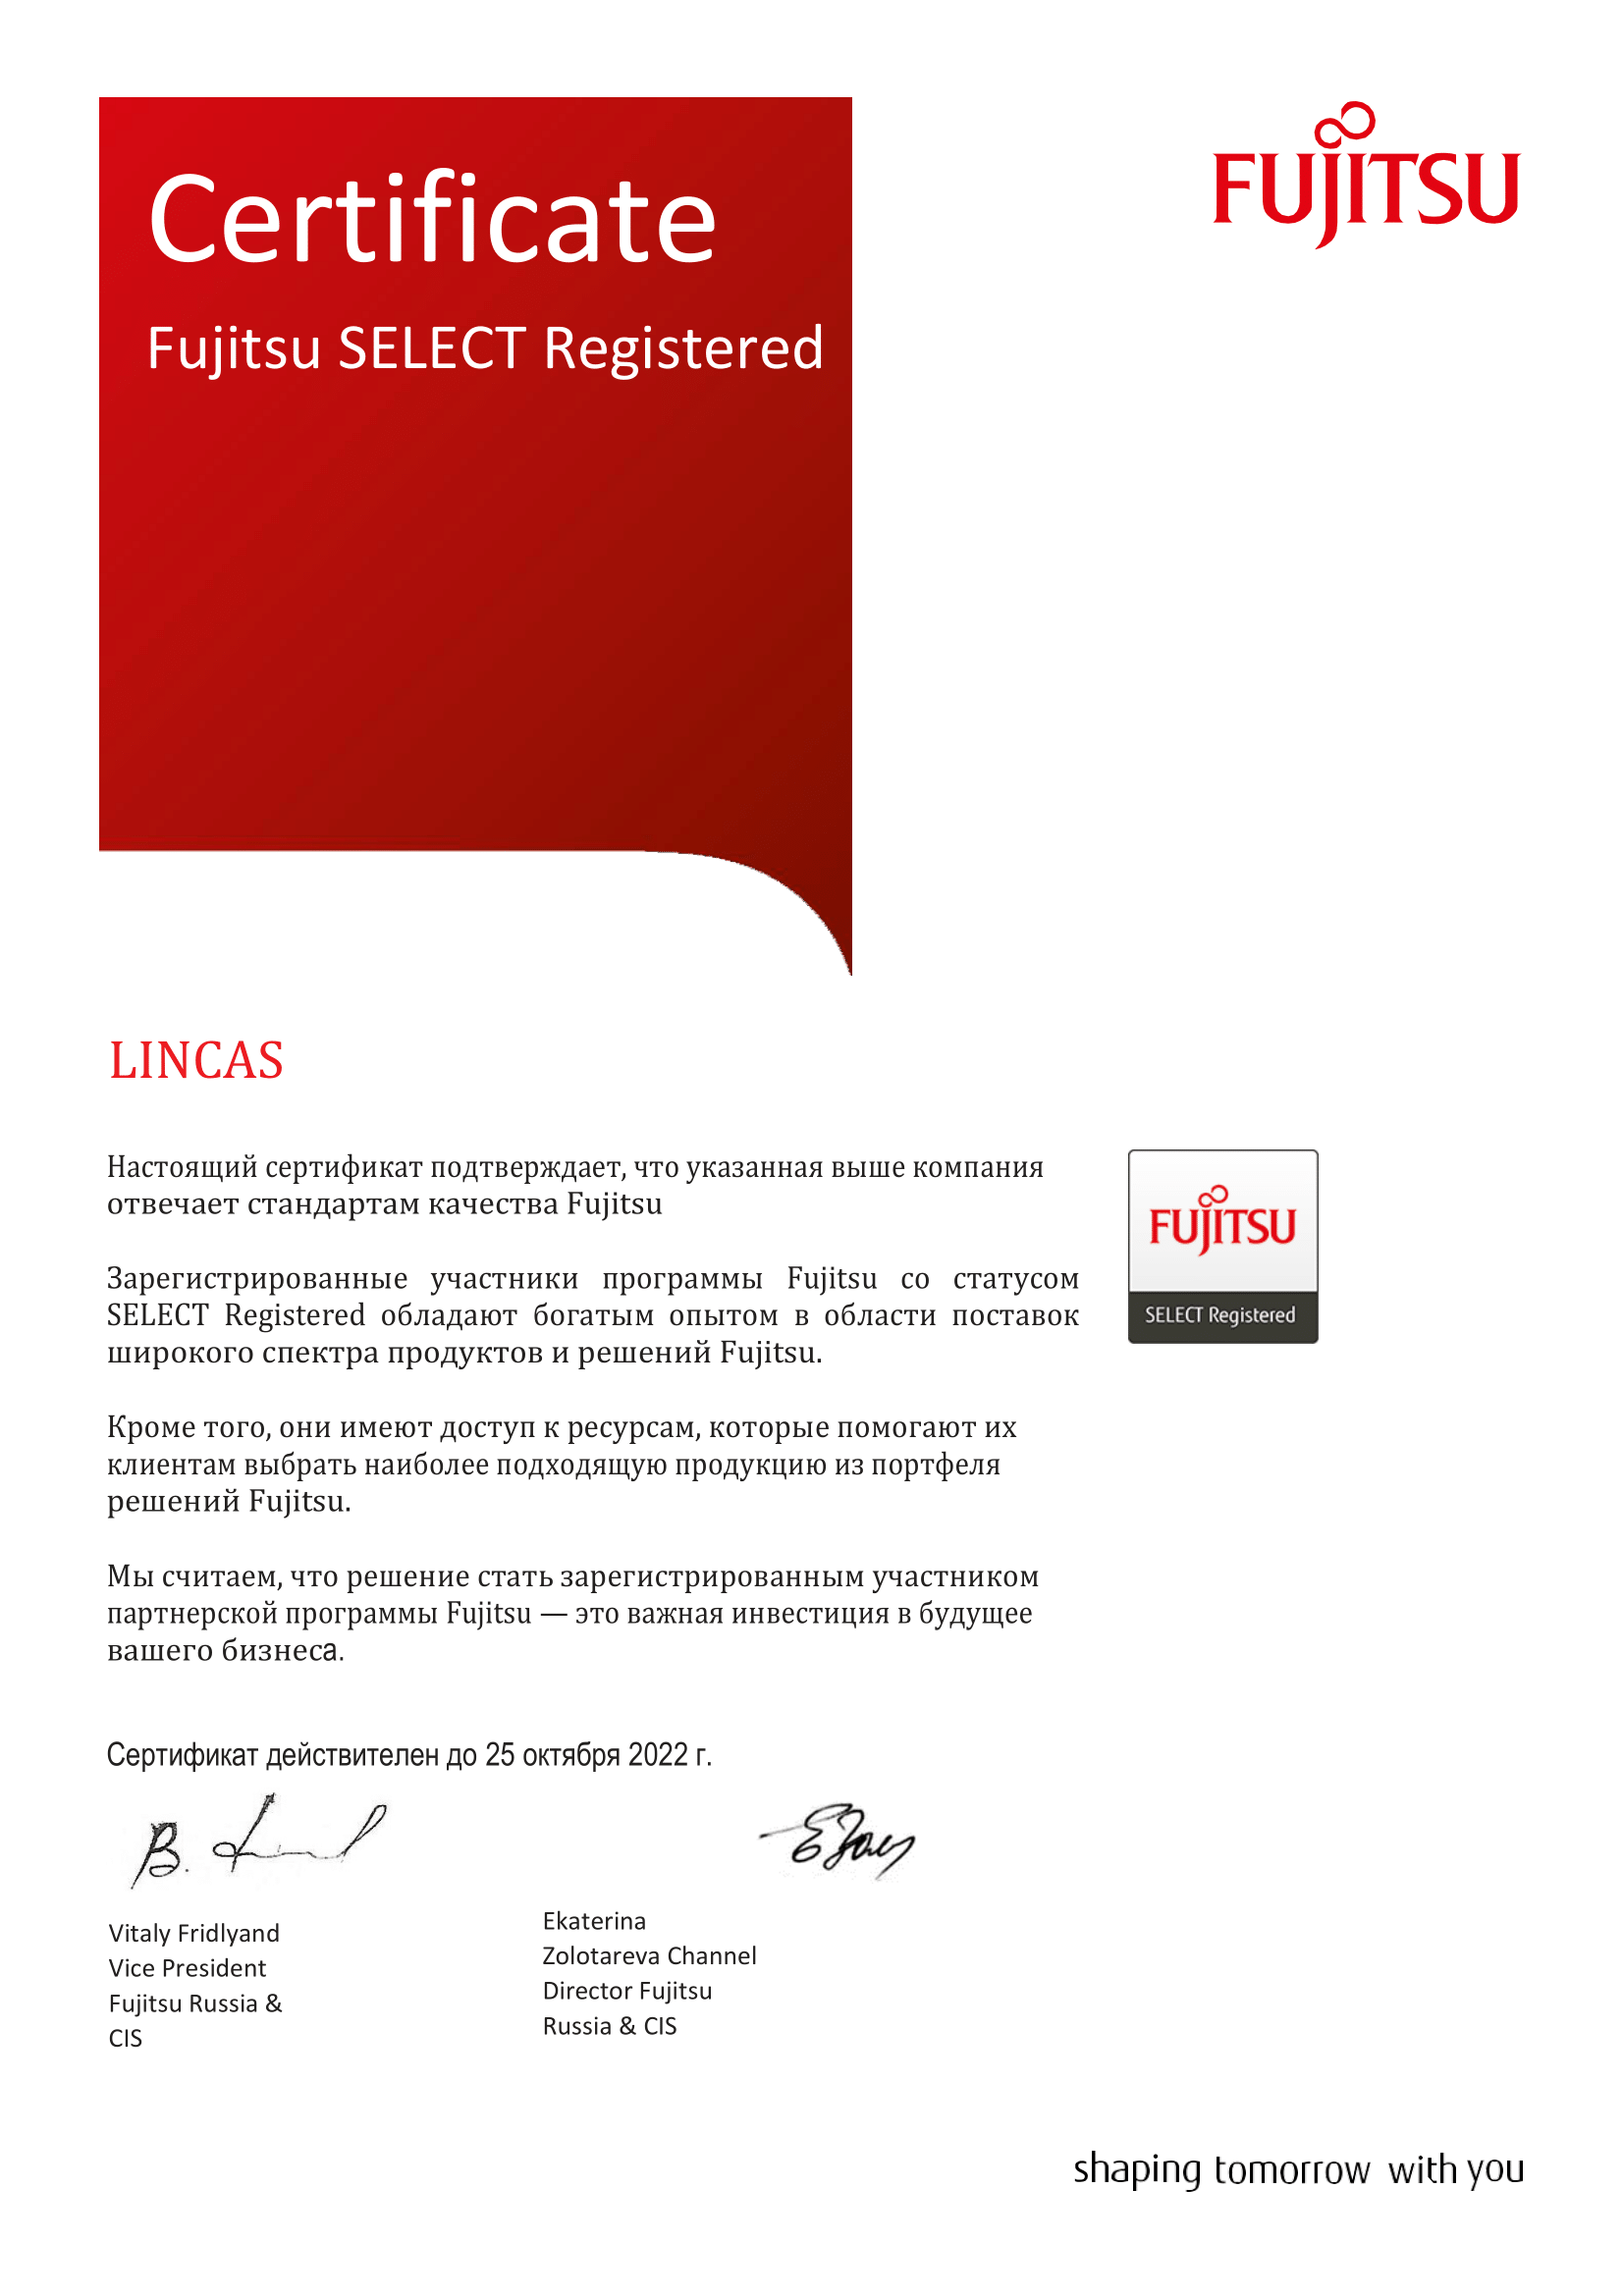 Сертификат партнера Fujitsu